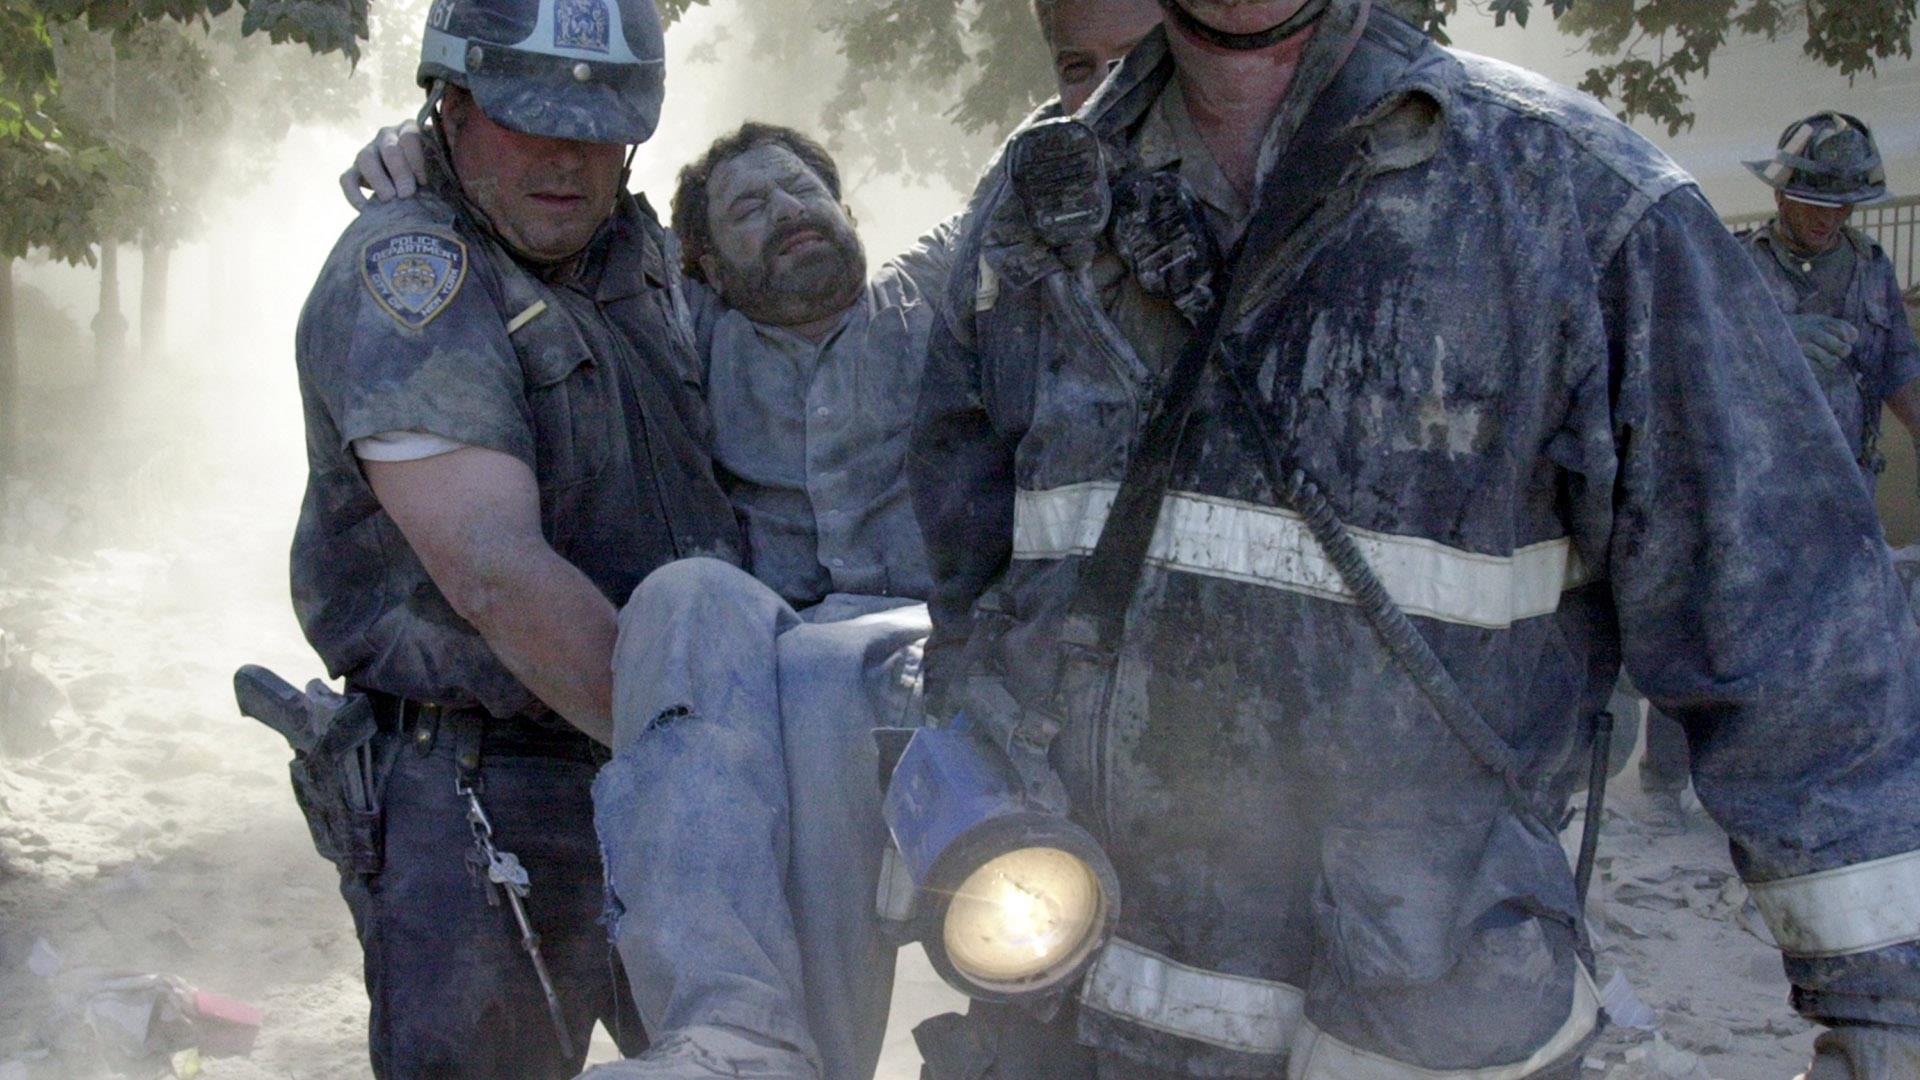 Сколько человек пропало после теракта в крокусе. 9.11.2001 Теракт сержант Маклафлин. Теракт в США 2001 башни Близнецы. Башни Близнецы 11 сентября жертвы.